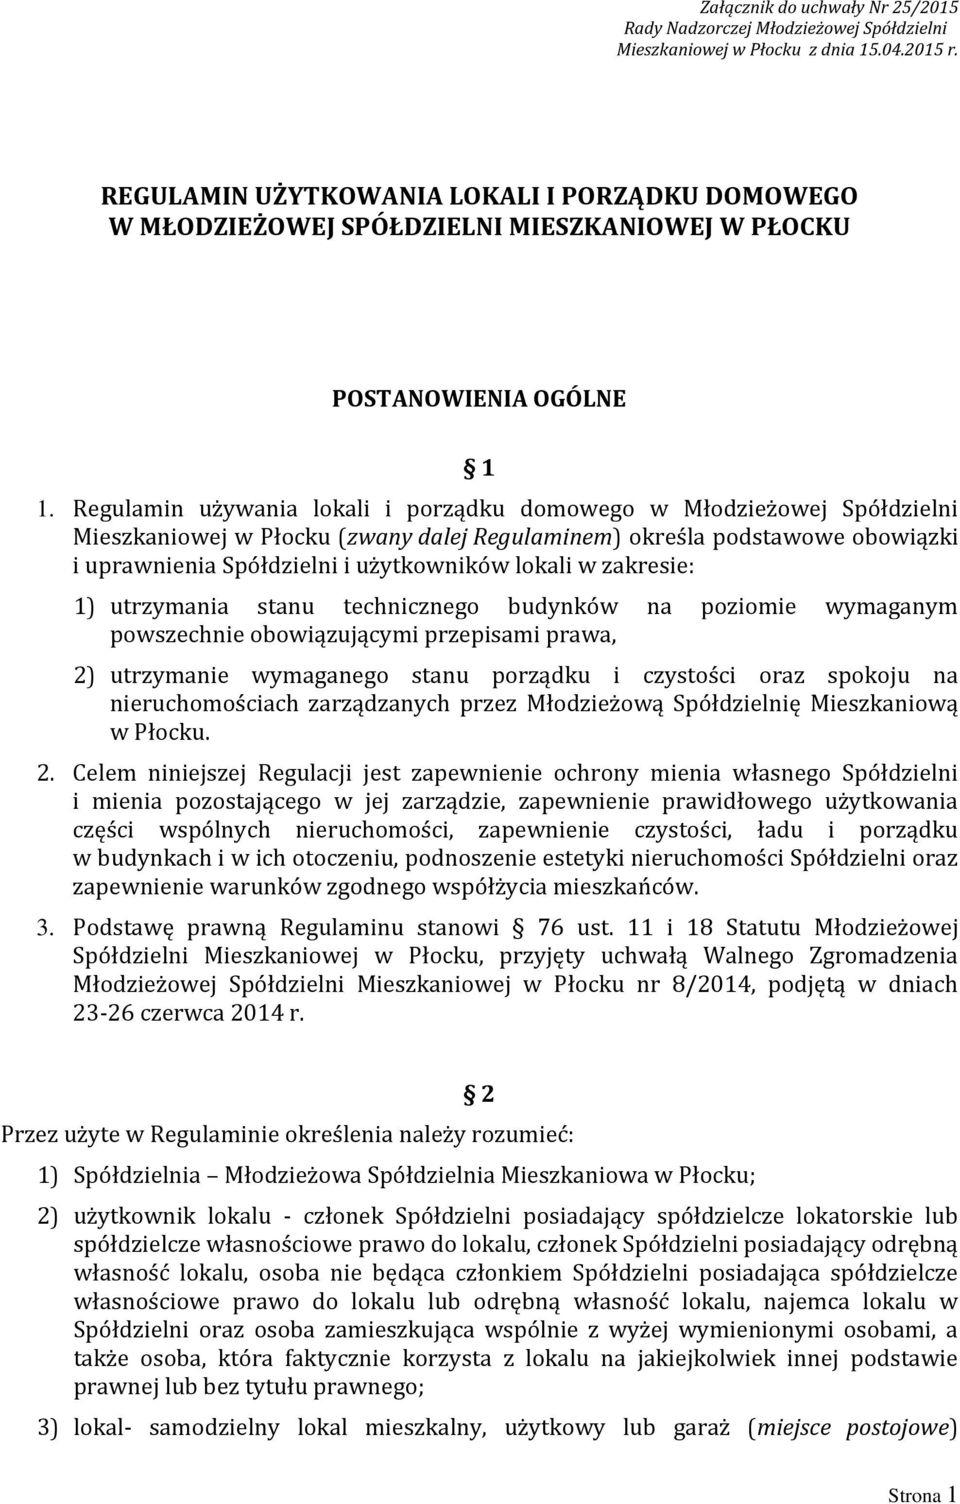 Regulamin używania lokali i porządku domowego w Młodzieżowej Spółdzielni Mieszkaniowej w Płocku (zwany dalej Regulaminem) określa podstawowe obowiązki i uprawnienia Spółdzielni i użytkowników lokali